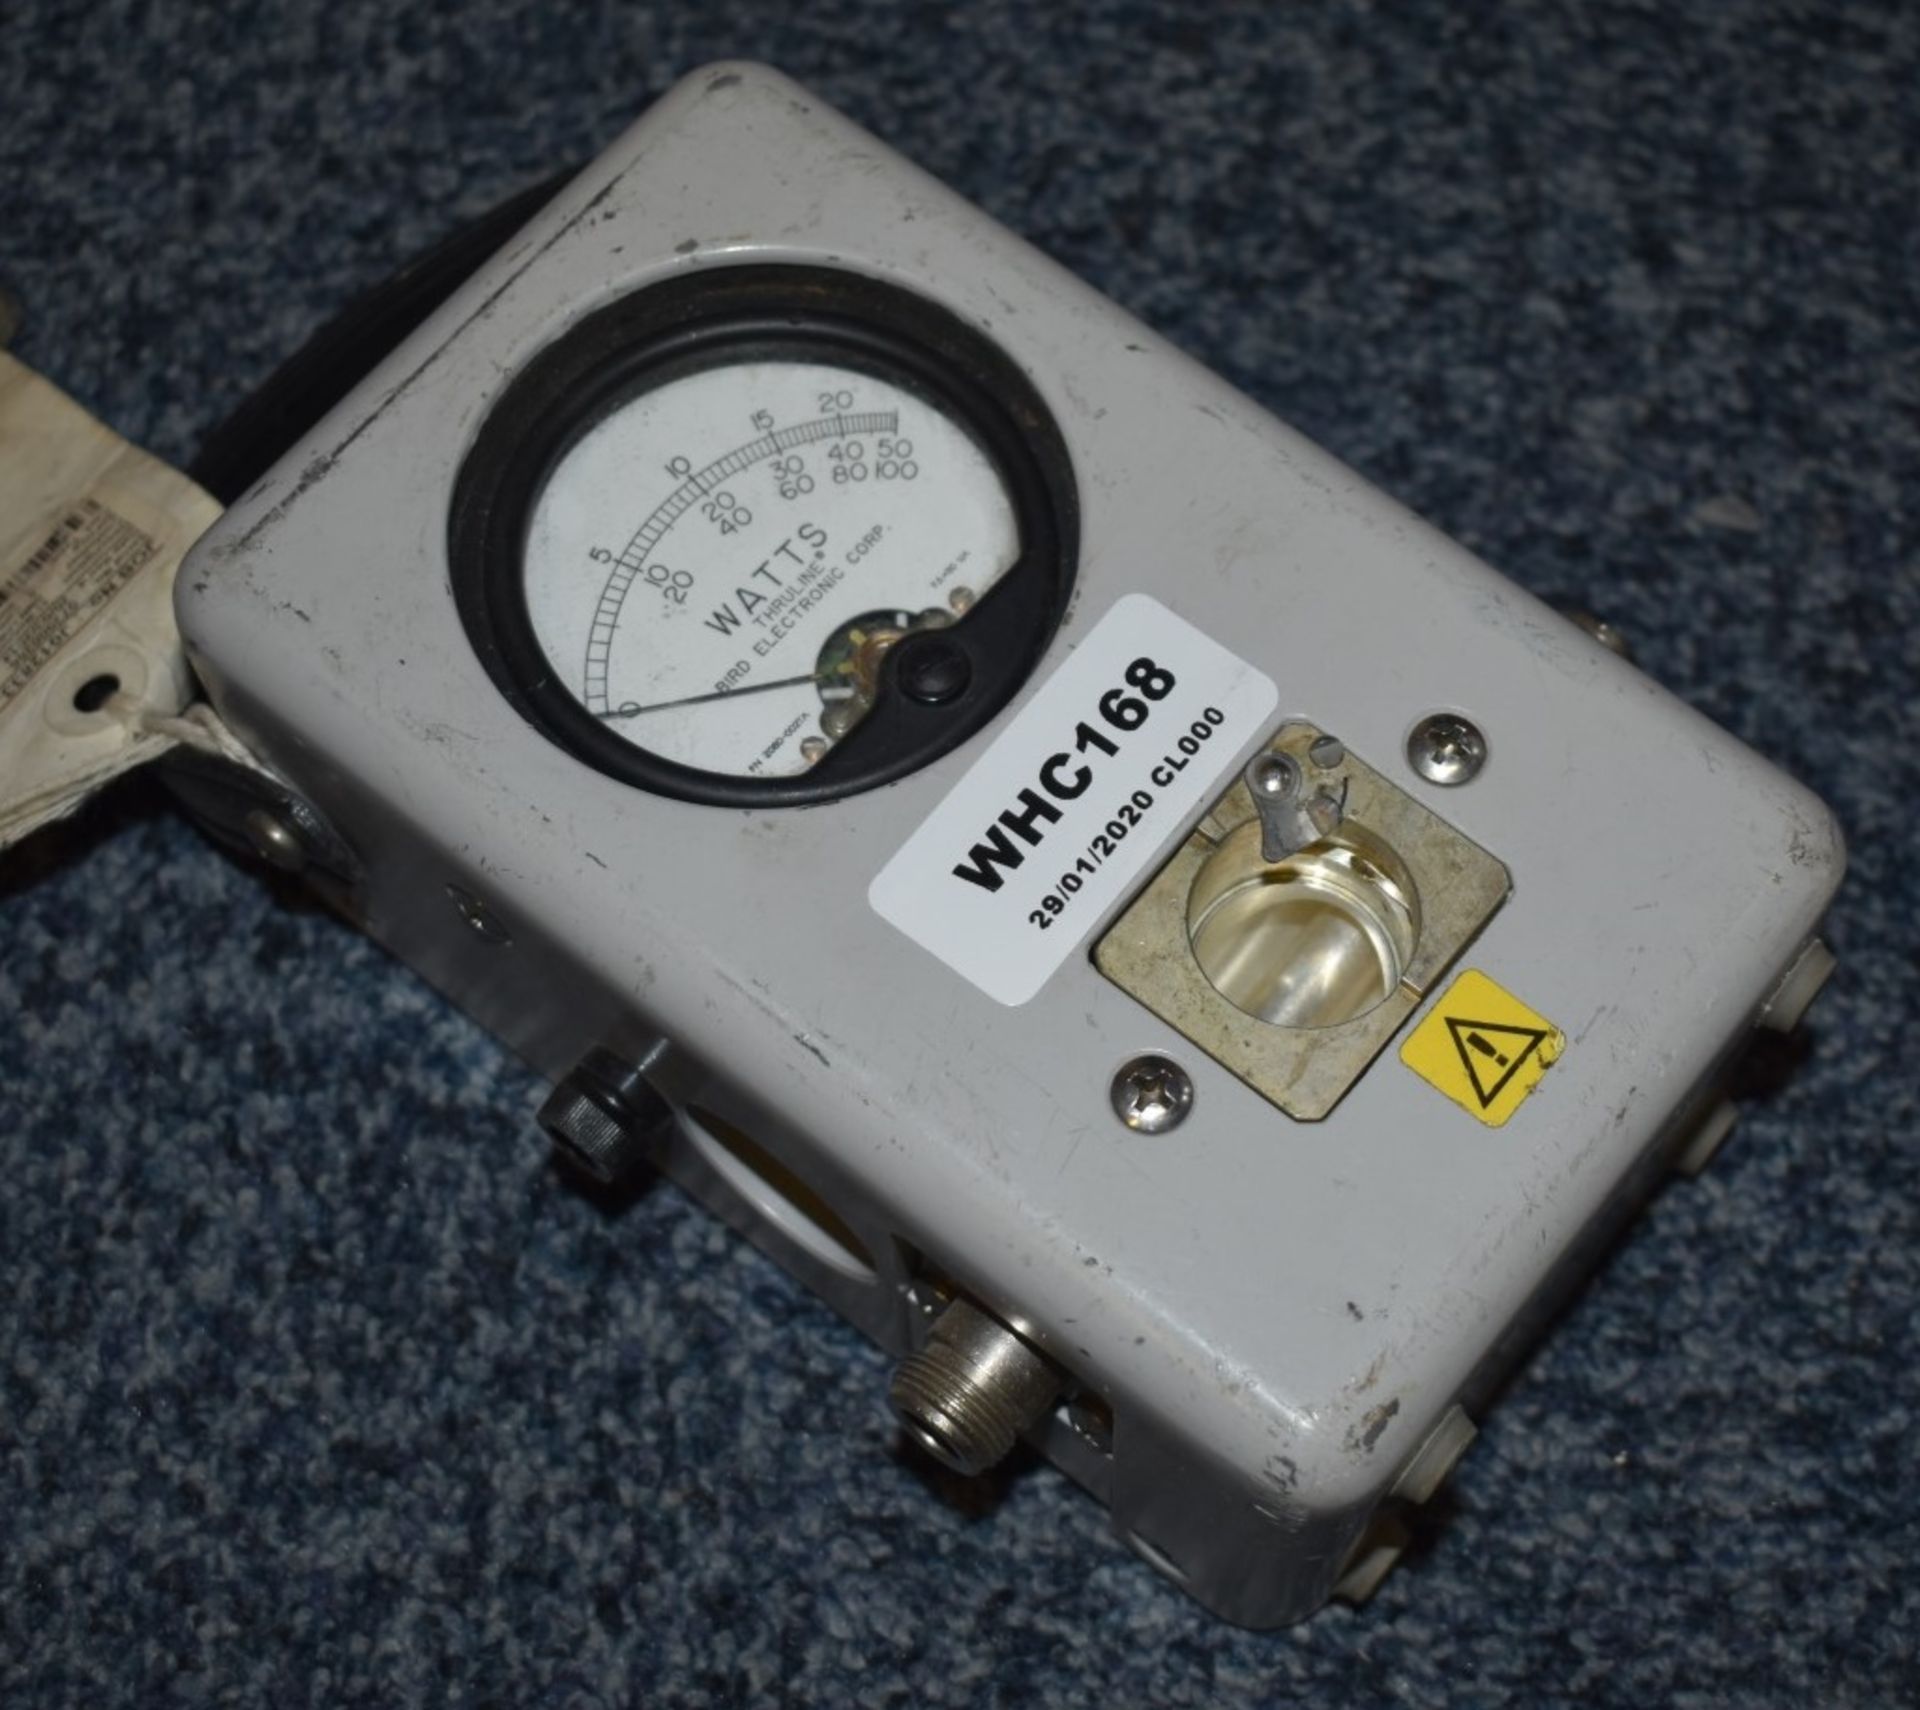 1 x Bird Thruline Wattmeter - Model 43 - Ref WHC168 WH2 - CL011 - Location: Altrincham WA14